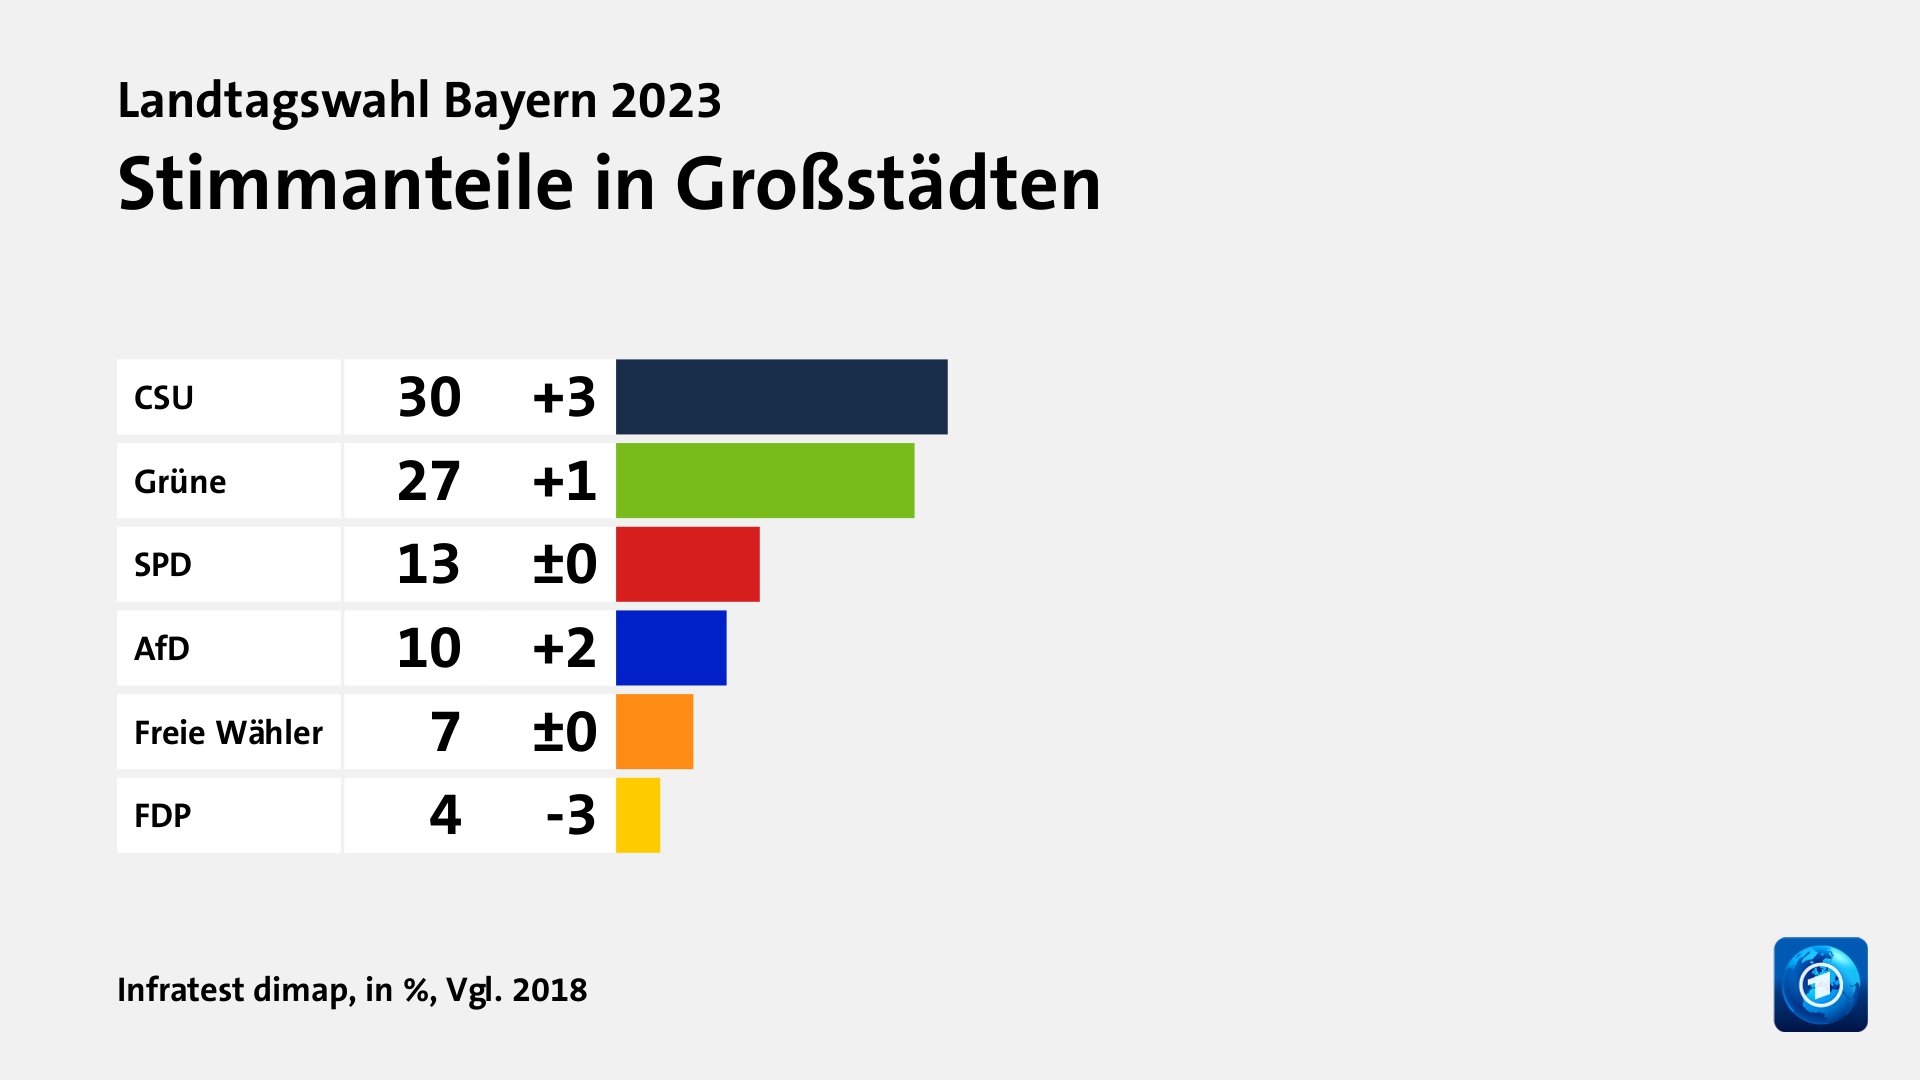 Stimmanteile in Großstädten, in %, Vgl. 2018: CSU 30, Grüne 27, SPD 13, AfD 10, Freie Wähler 7, FDP 4, Quelle: Infratest dimap